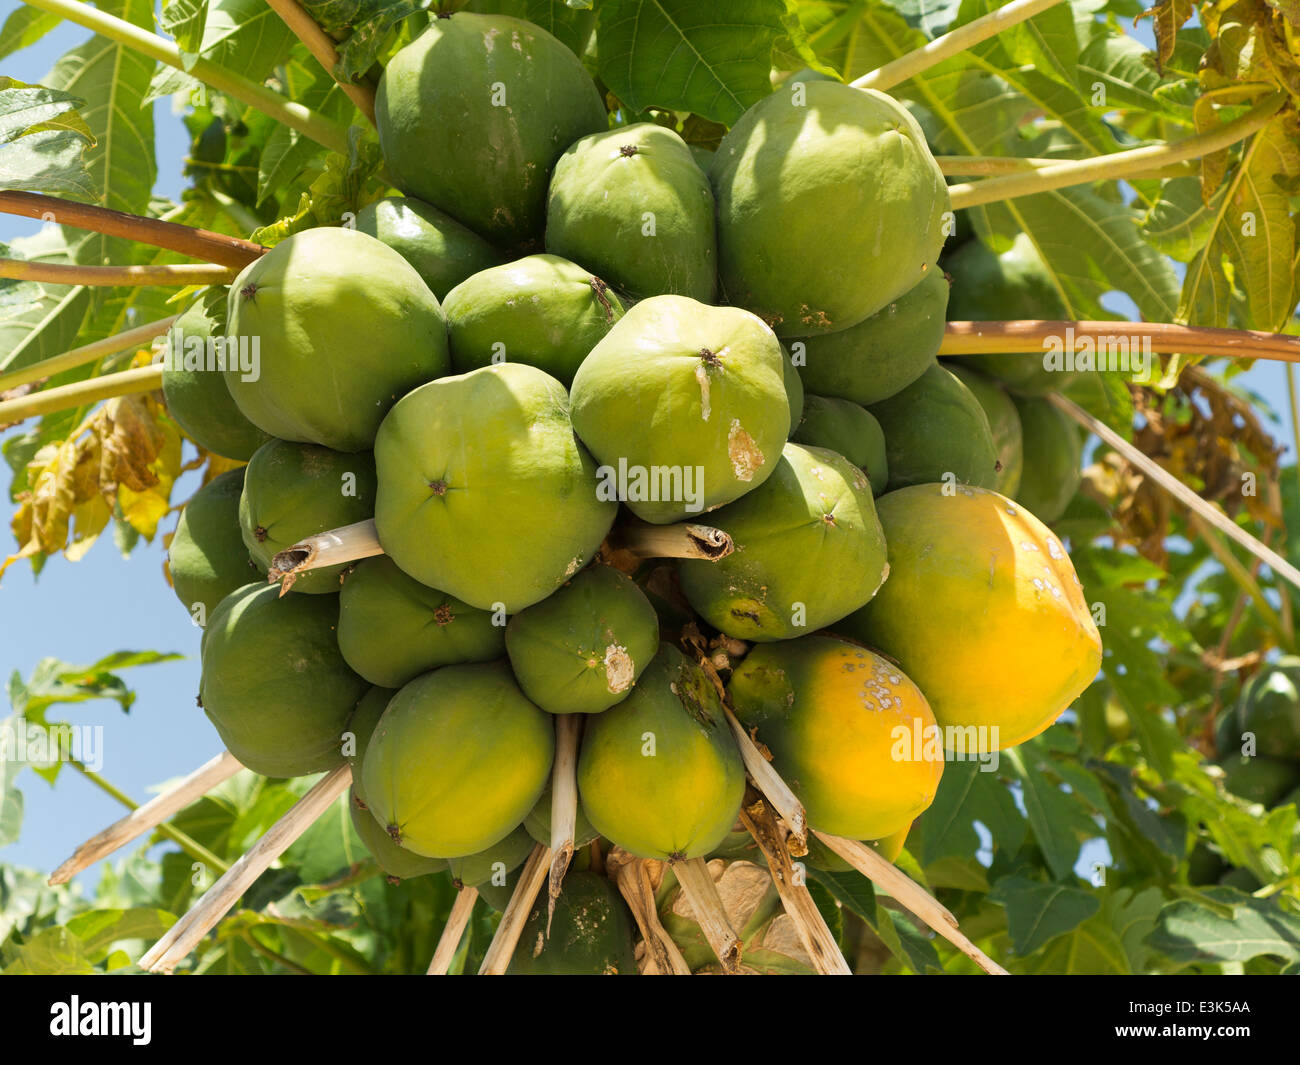 La parte superior de un árbol de papaya contra un cielo azul mostrando las hojas y los frutos algunas frutas con ligeras rot y manchas Foto de stock